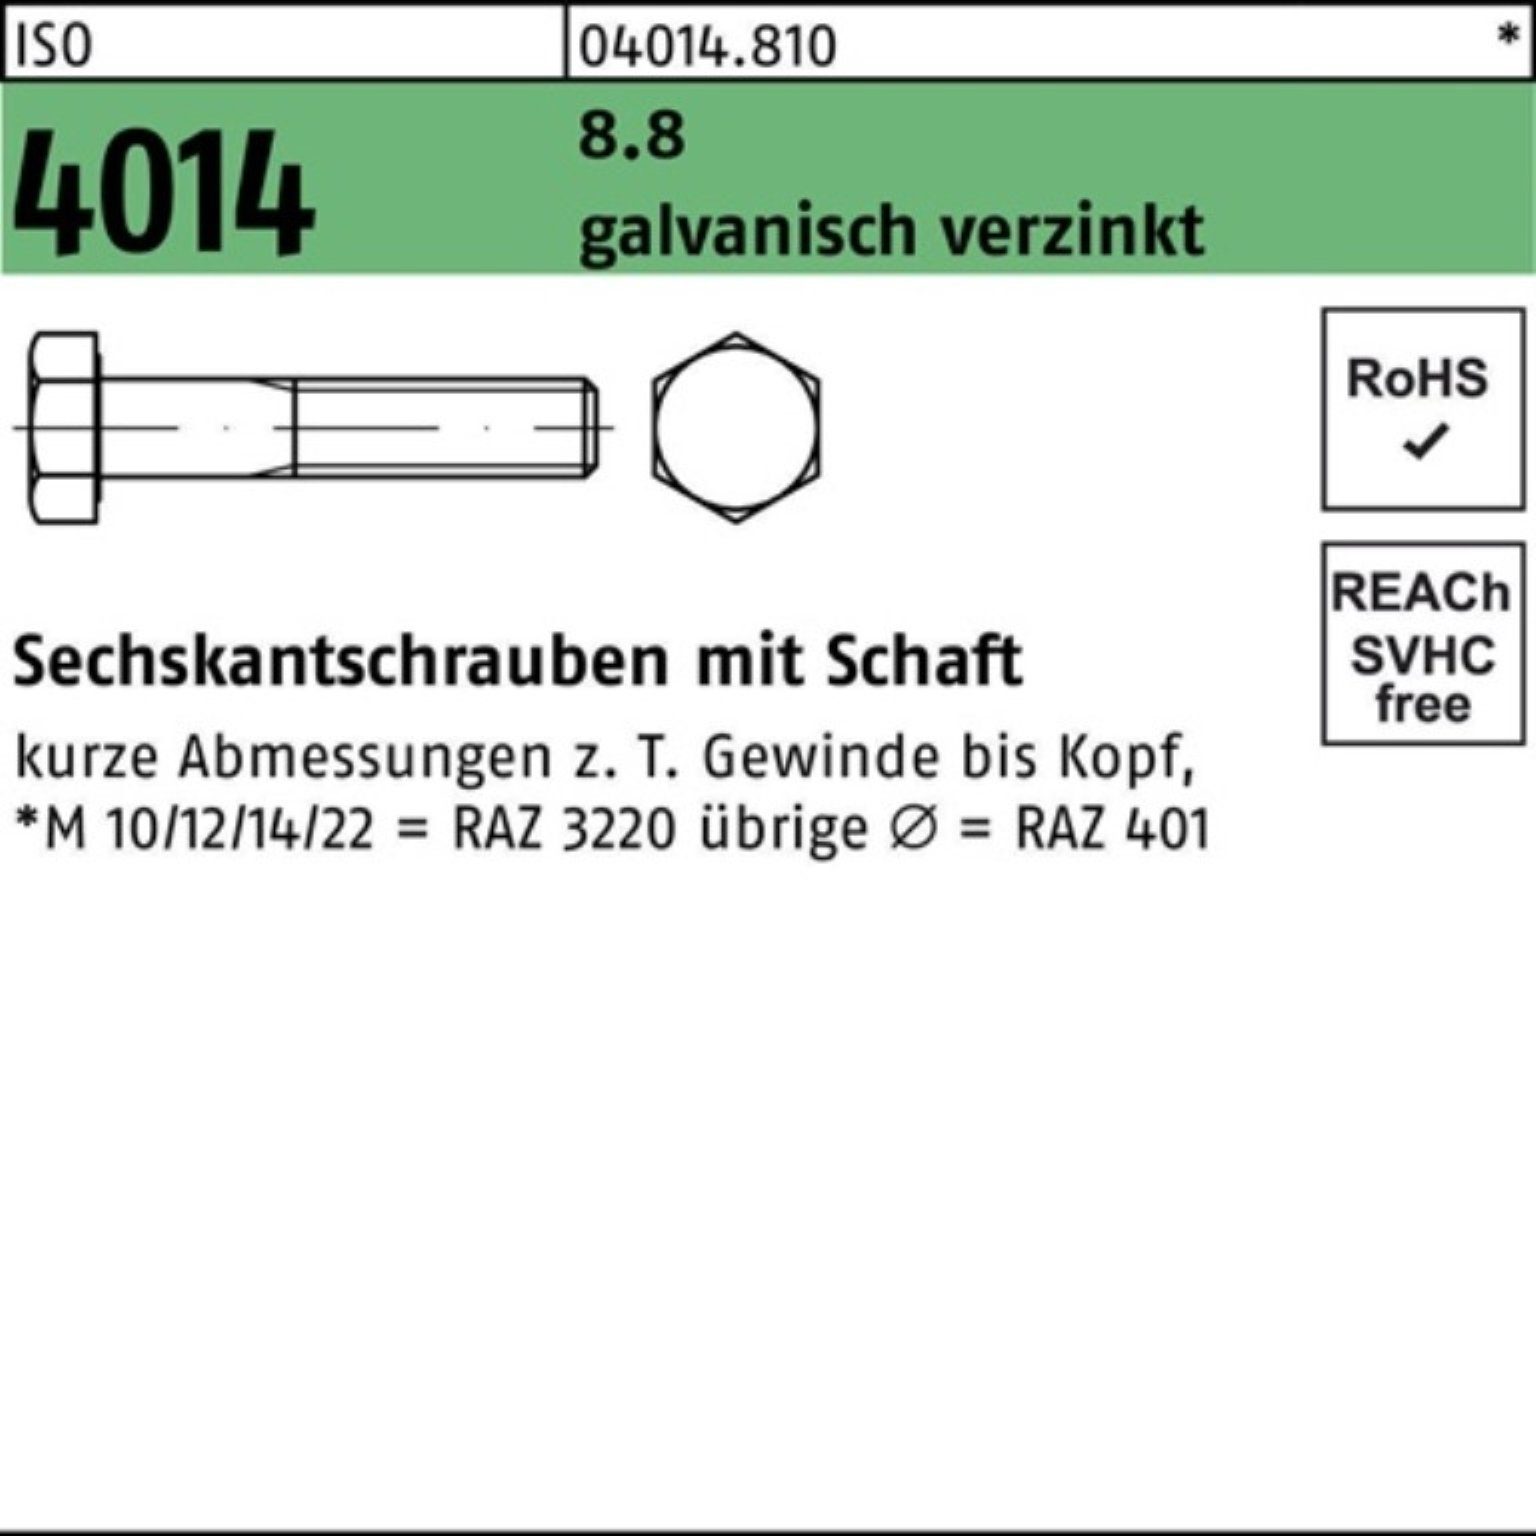 Bufab Sechskantschraube 100er Pack 160 Sechskantschraube 1 4014 galv.verz. M42x 8.8 Schaft ISO